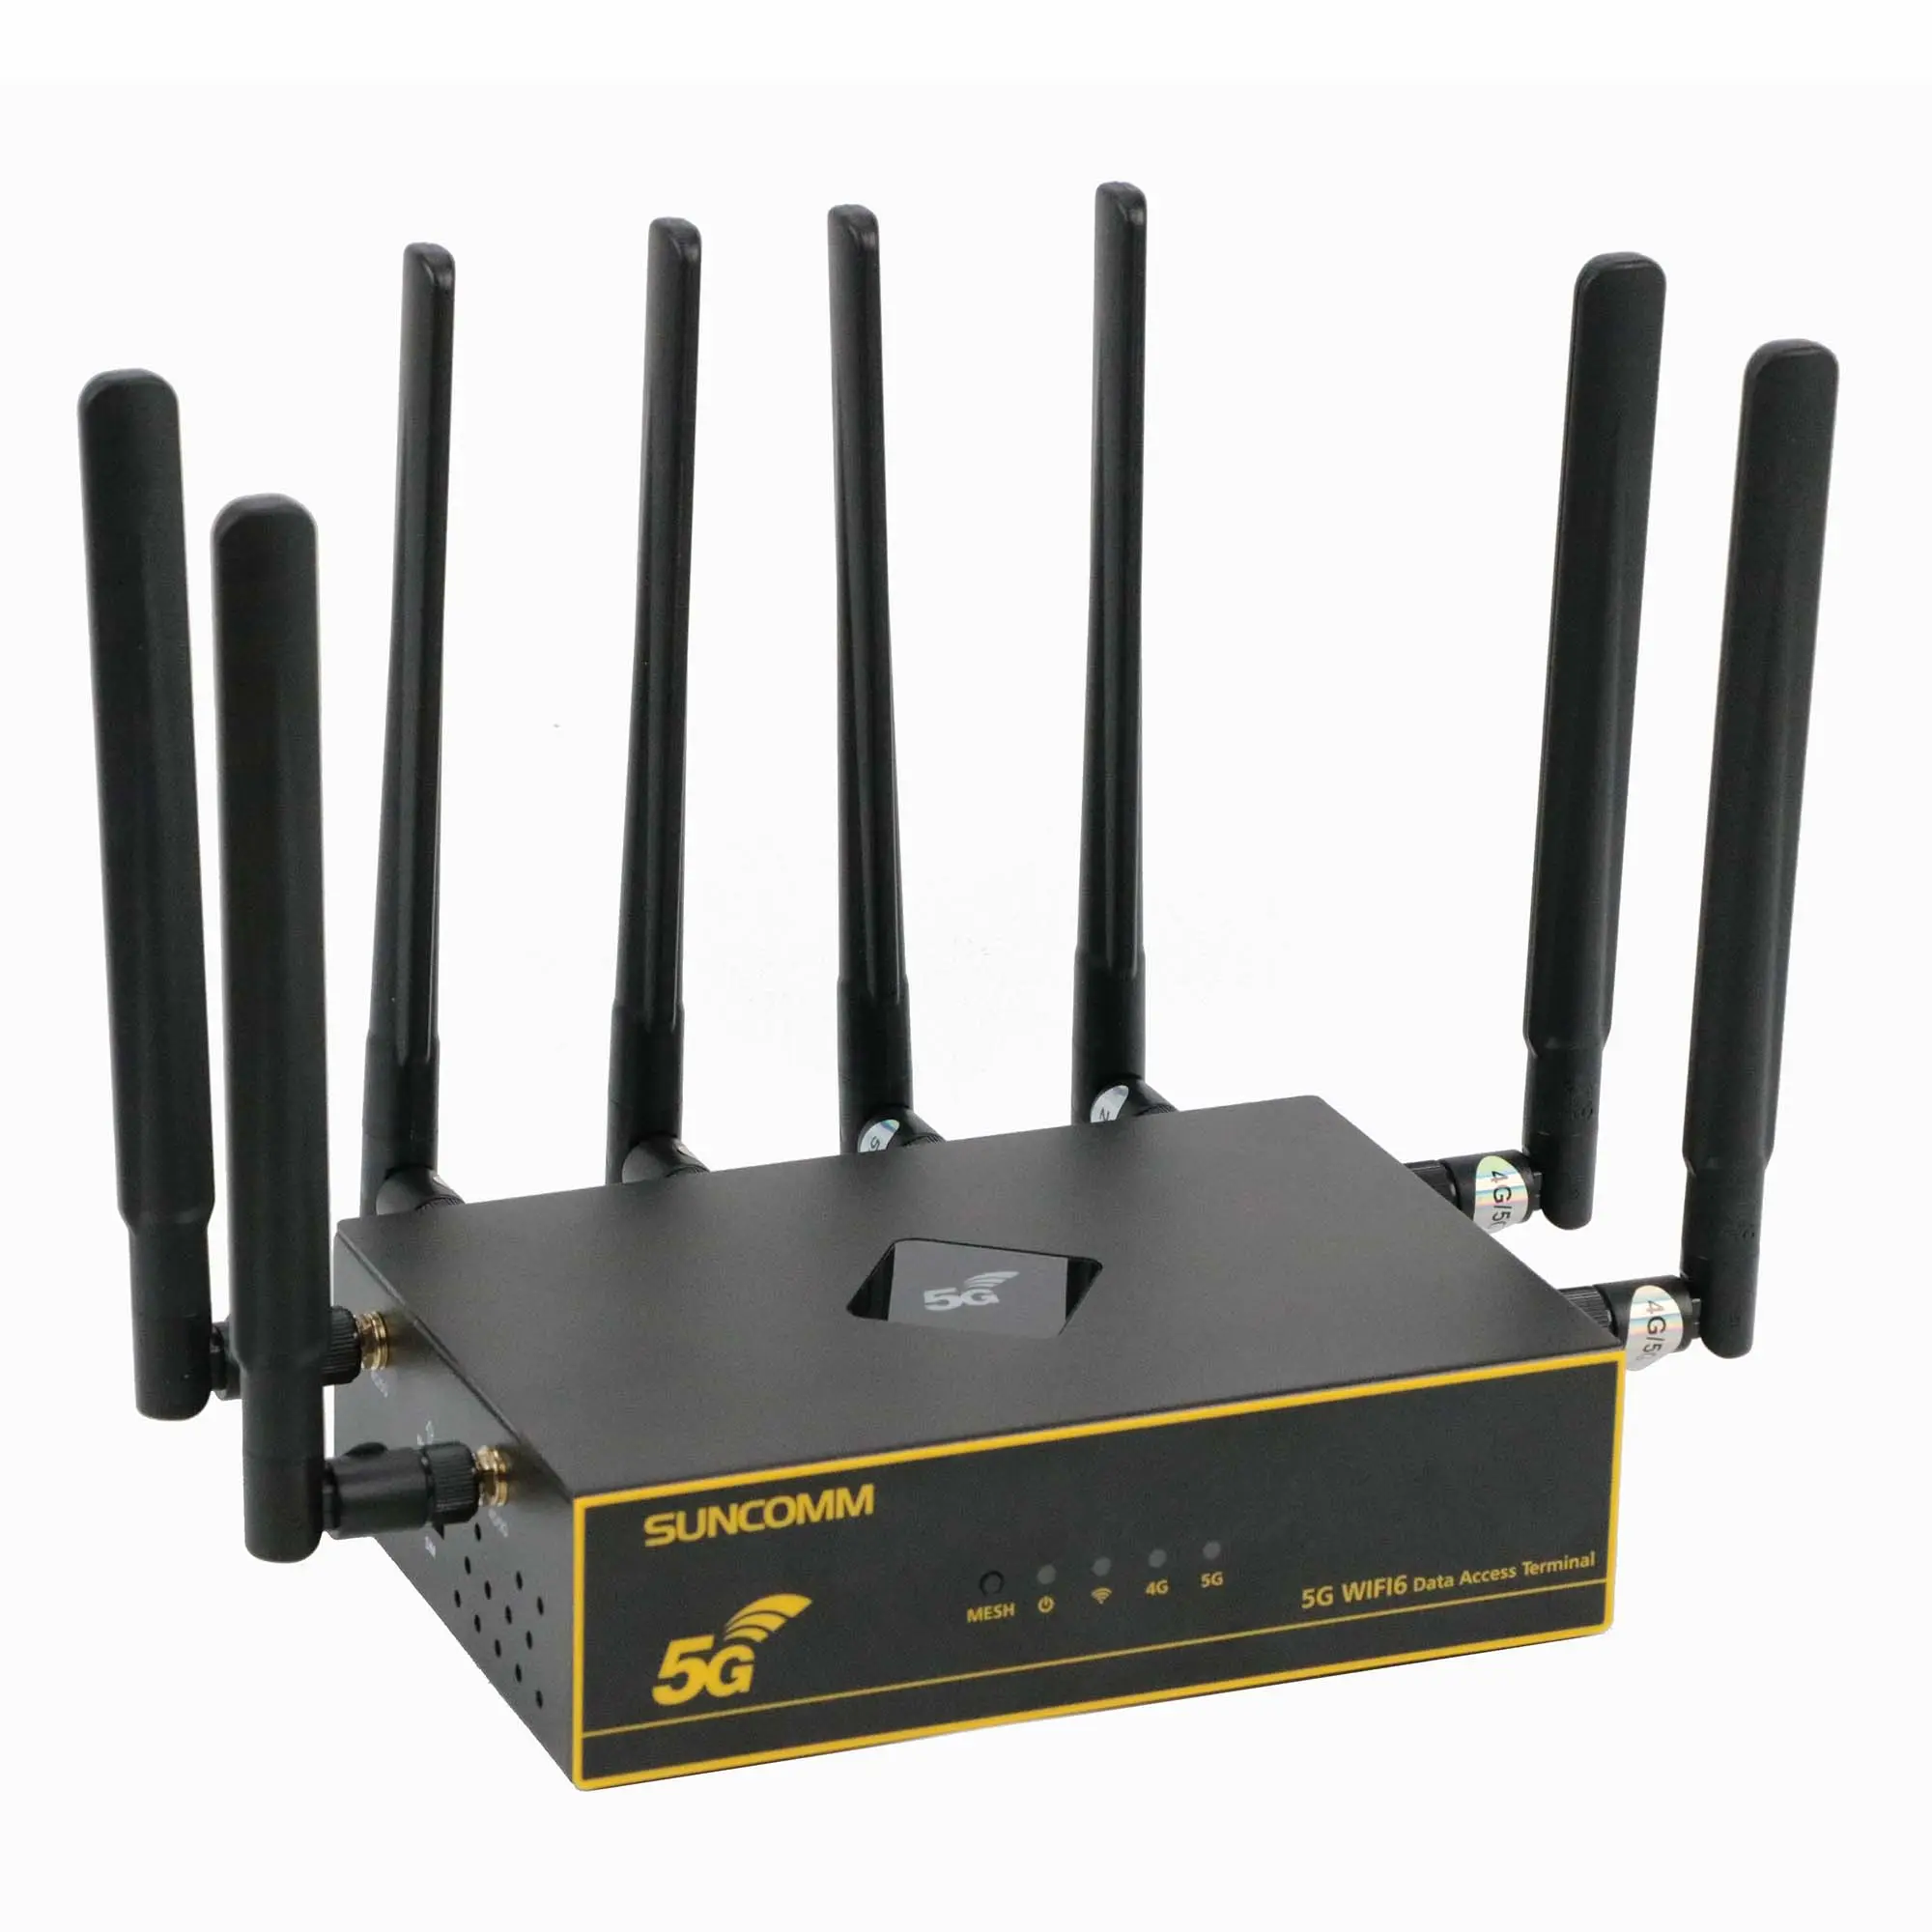 Philippinen Heiß verkaufter 5G-Router mit SIM-Kartens teck platz X62 WiFi 6 2,4G/5,8 GHz WiFi MESH QoS VPN 5G-Router